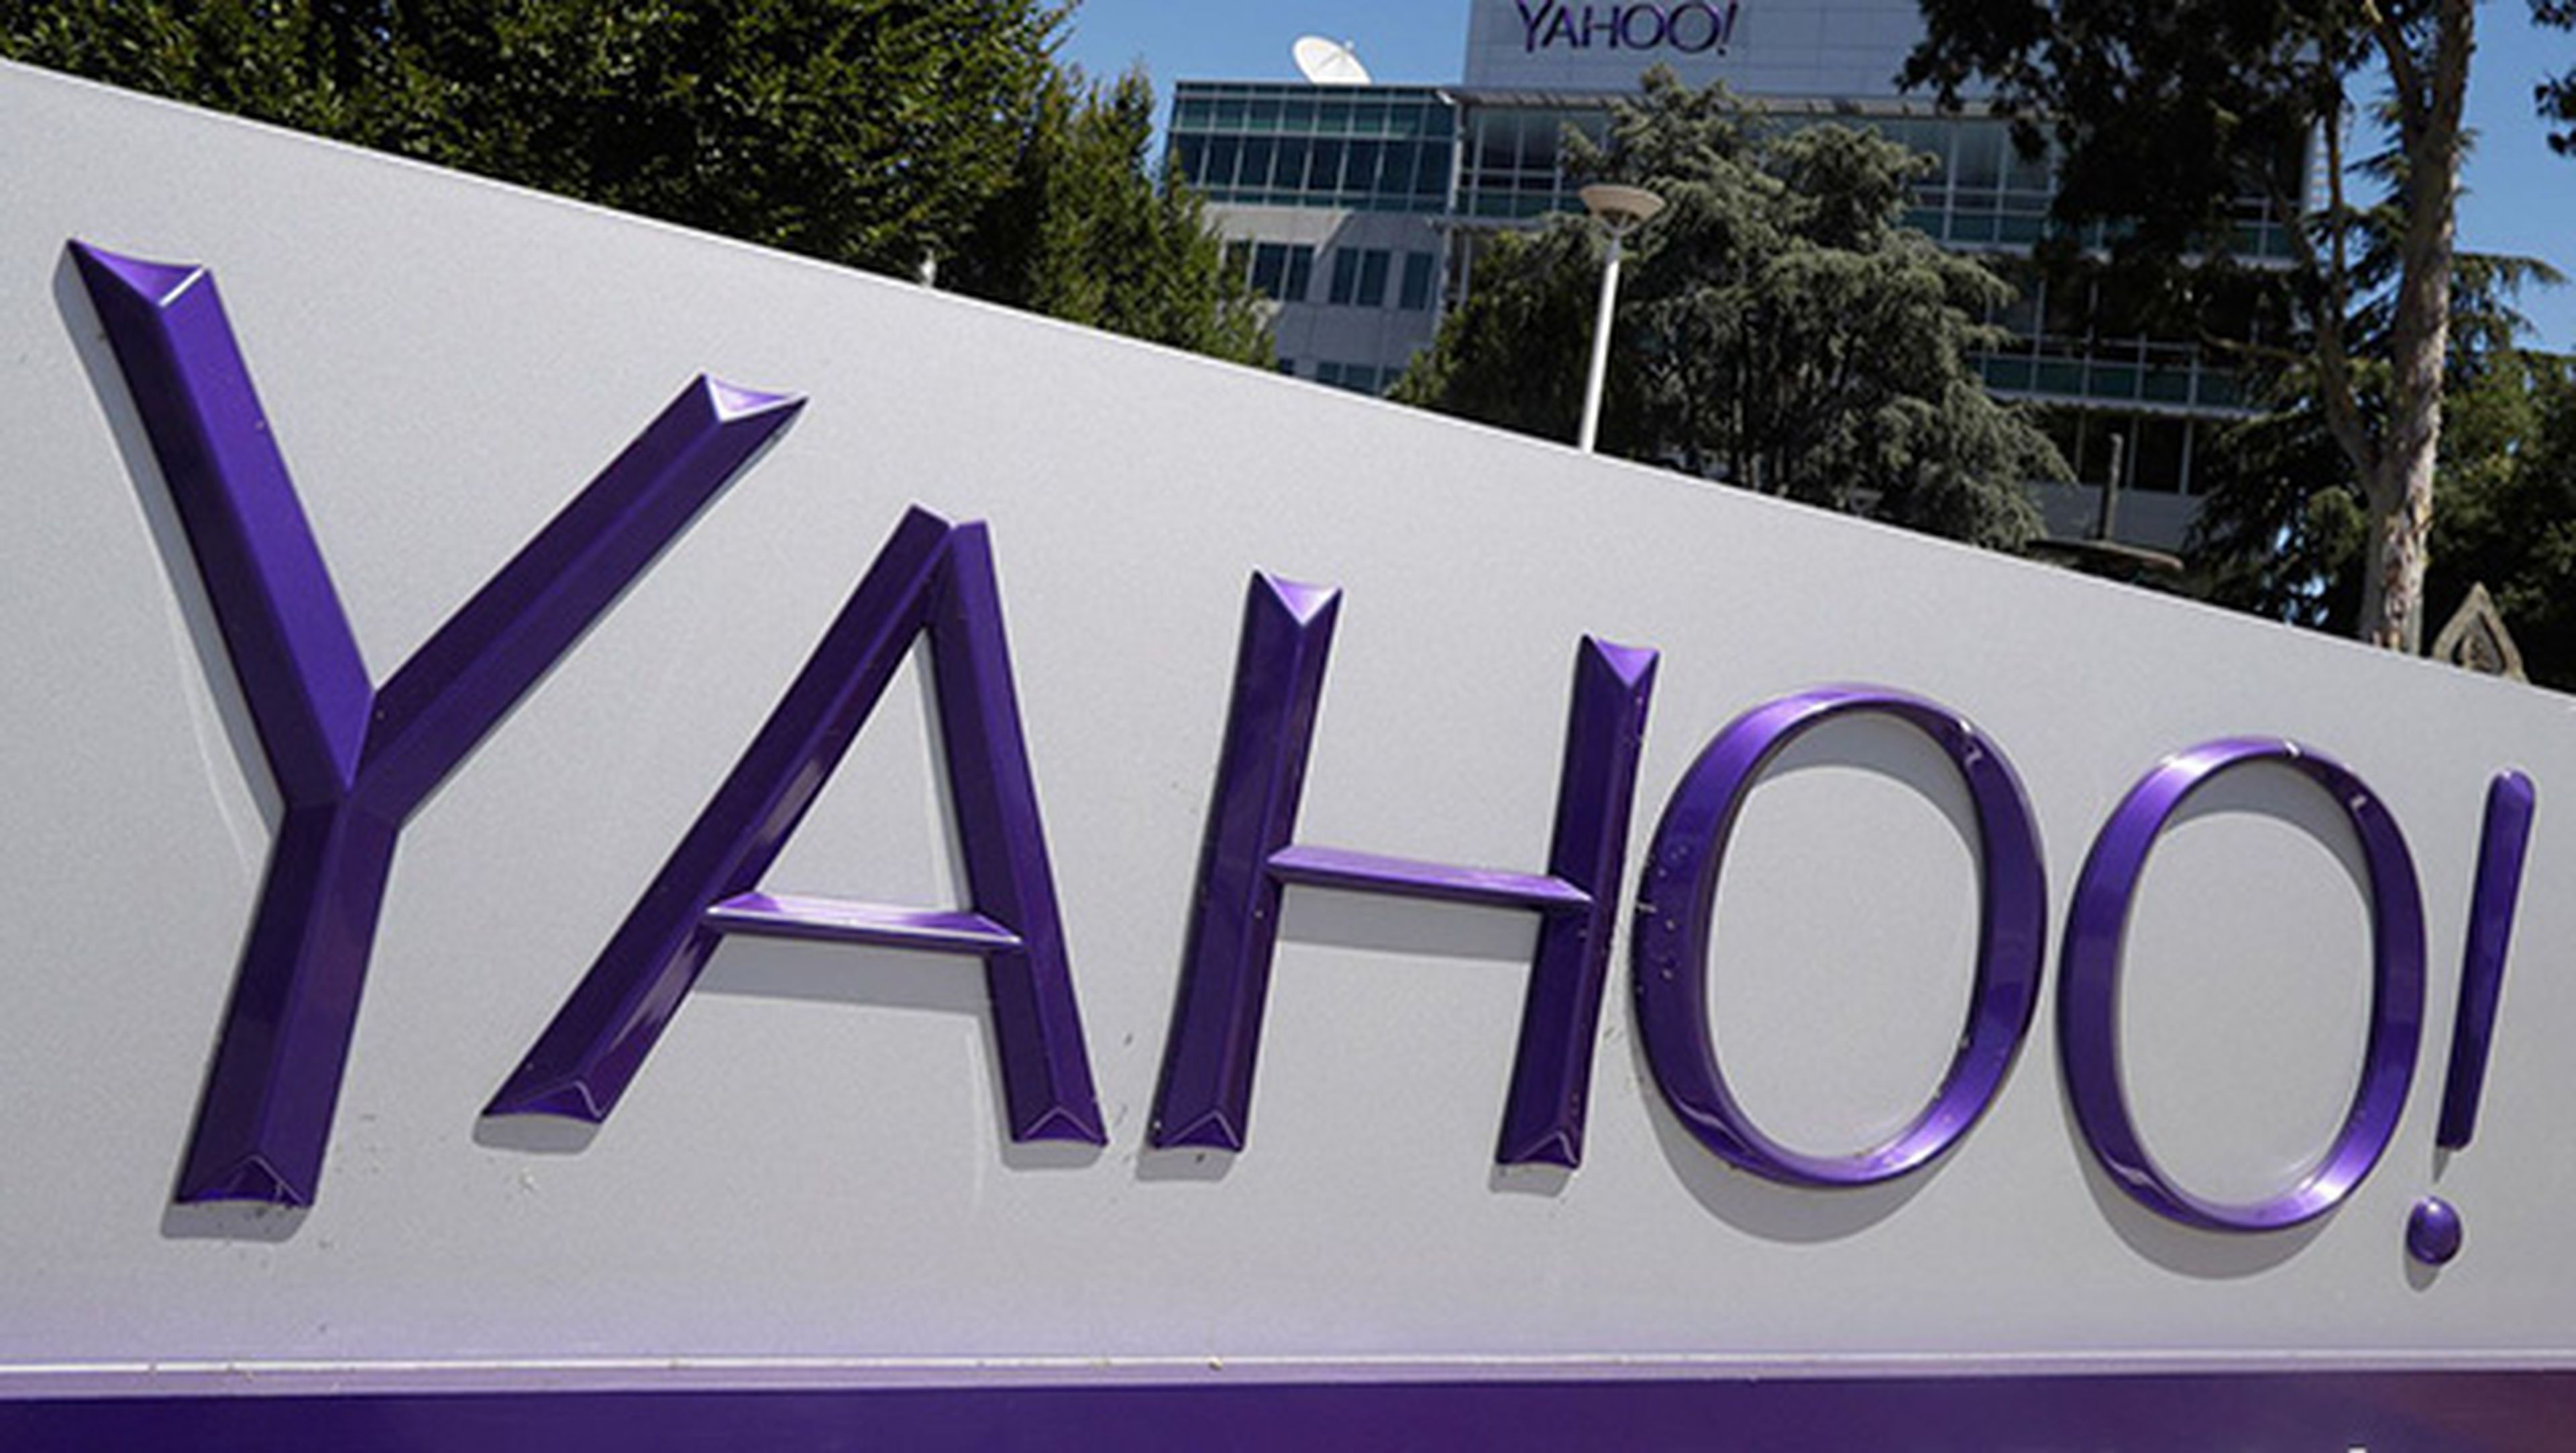 Hackeo Yahoo!